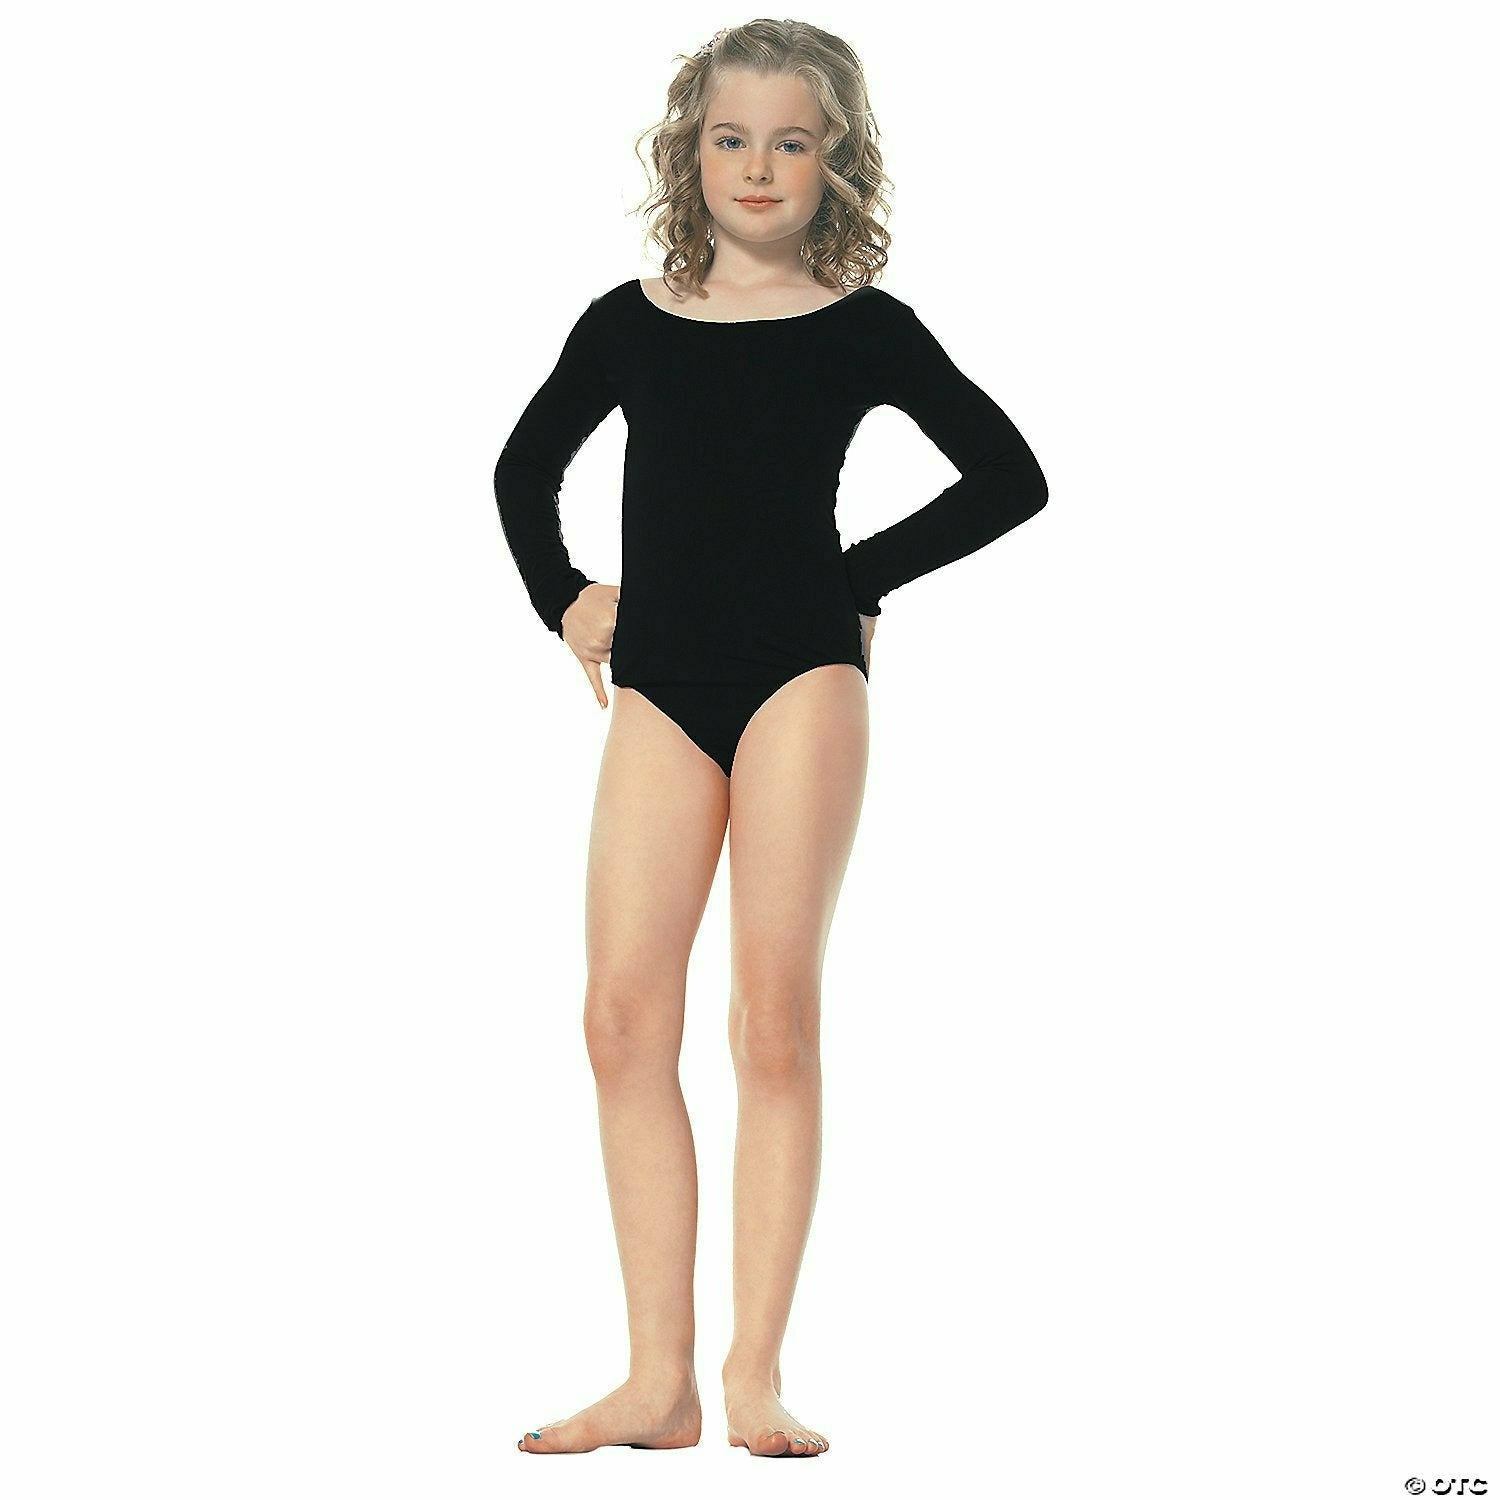 Amscan Child's Black Bodysuit, medium